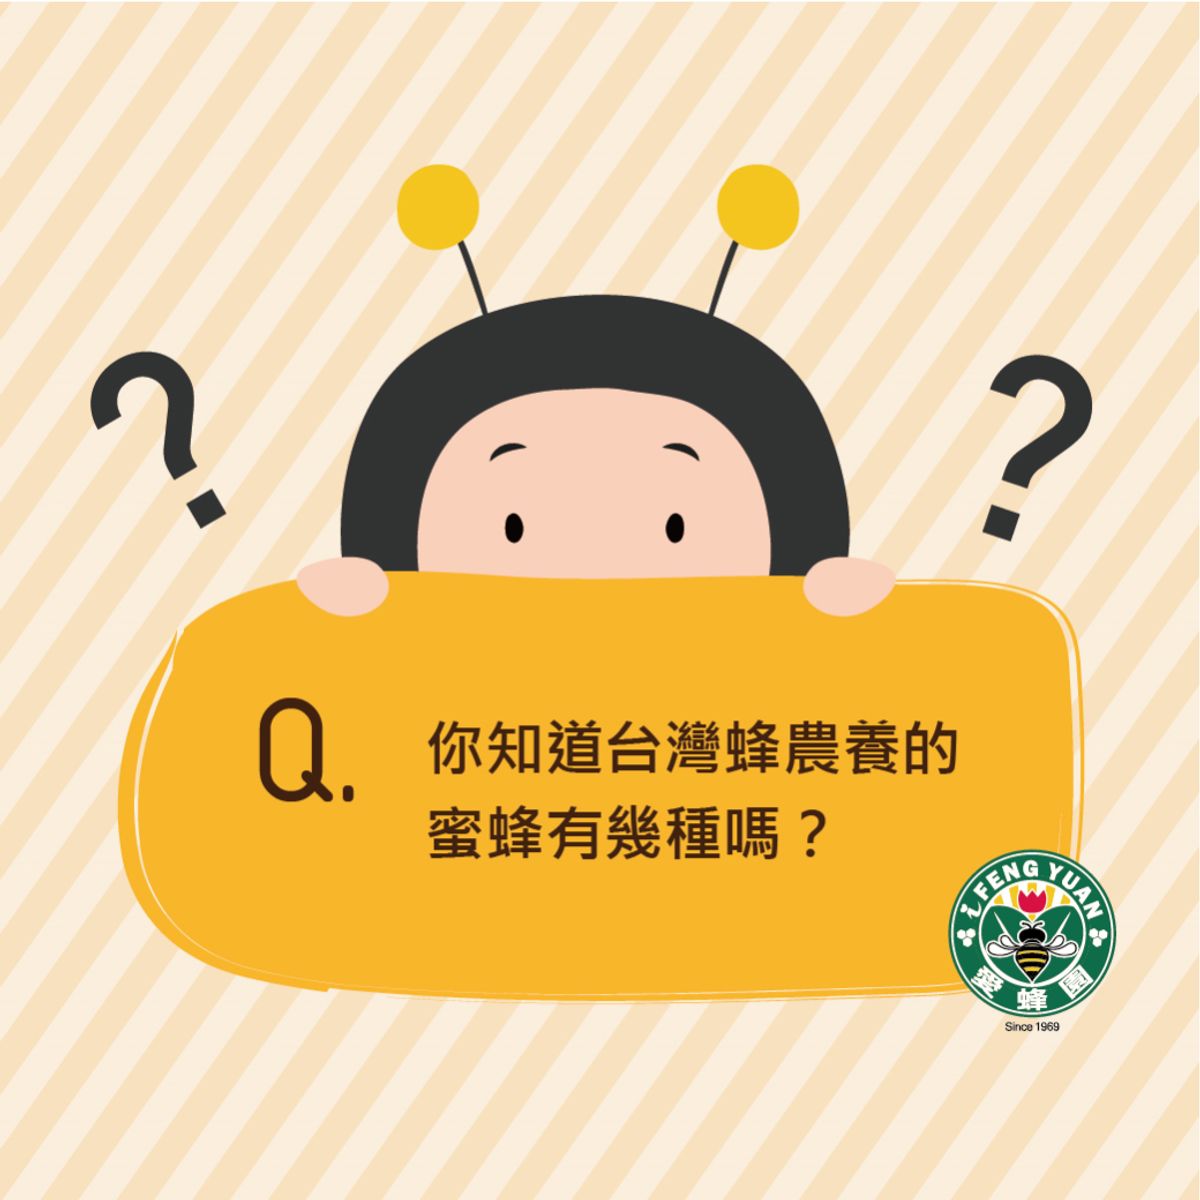 【愛蜂園小學堂】台灣蜂農養的蜜蜂是哪幾種呢?